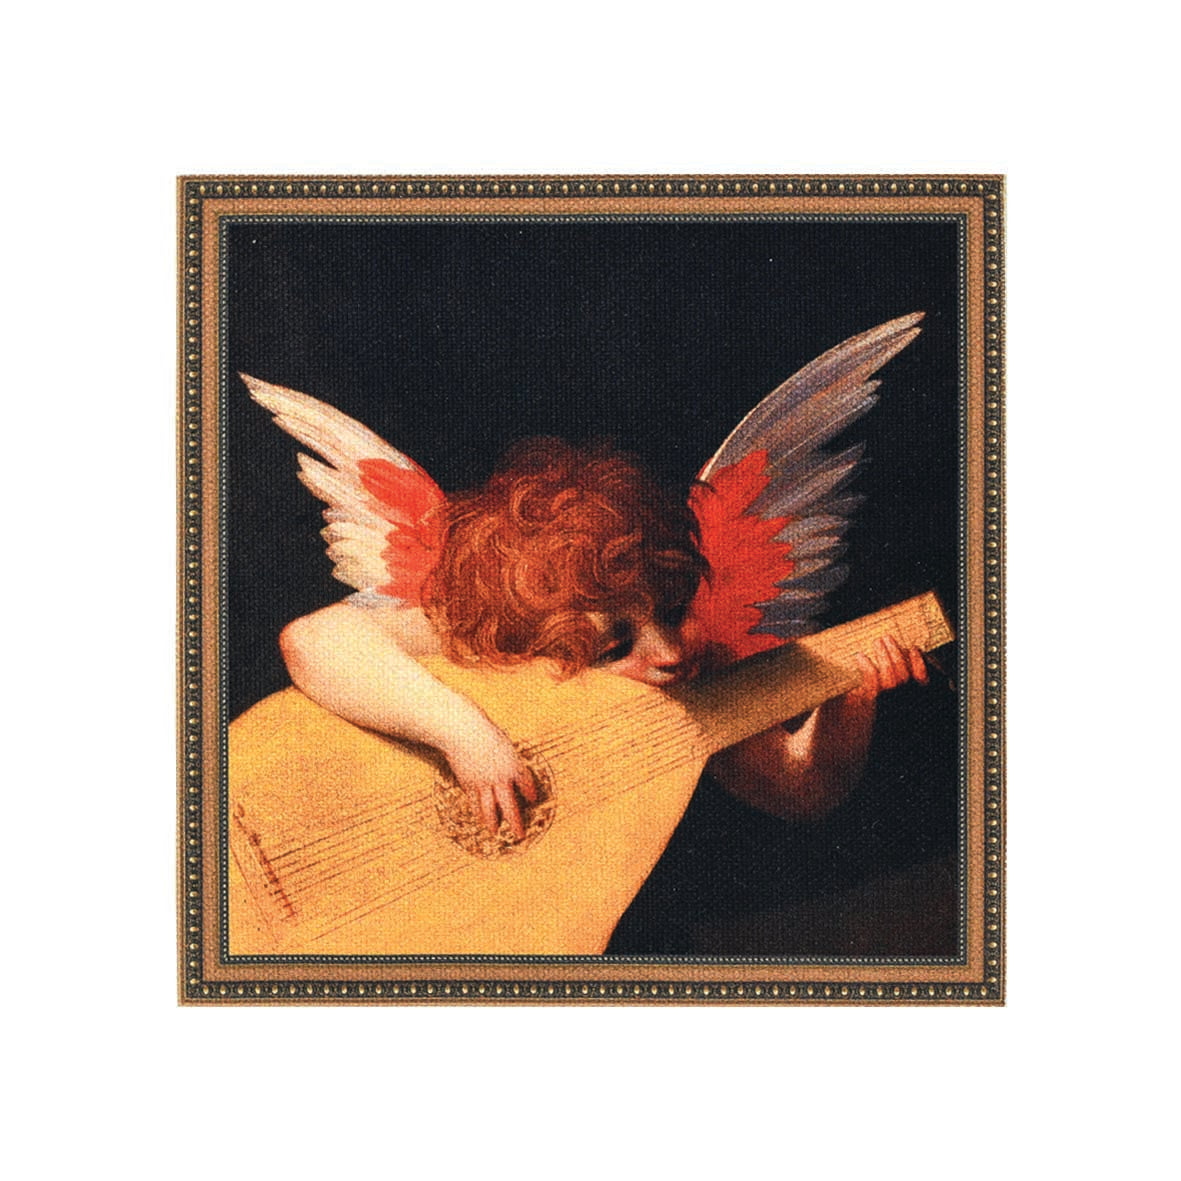 Stalo padėkliukai "Renesanso angelai" (6 vnt.)